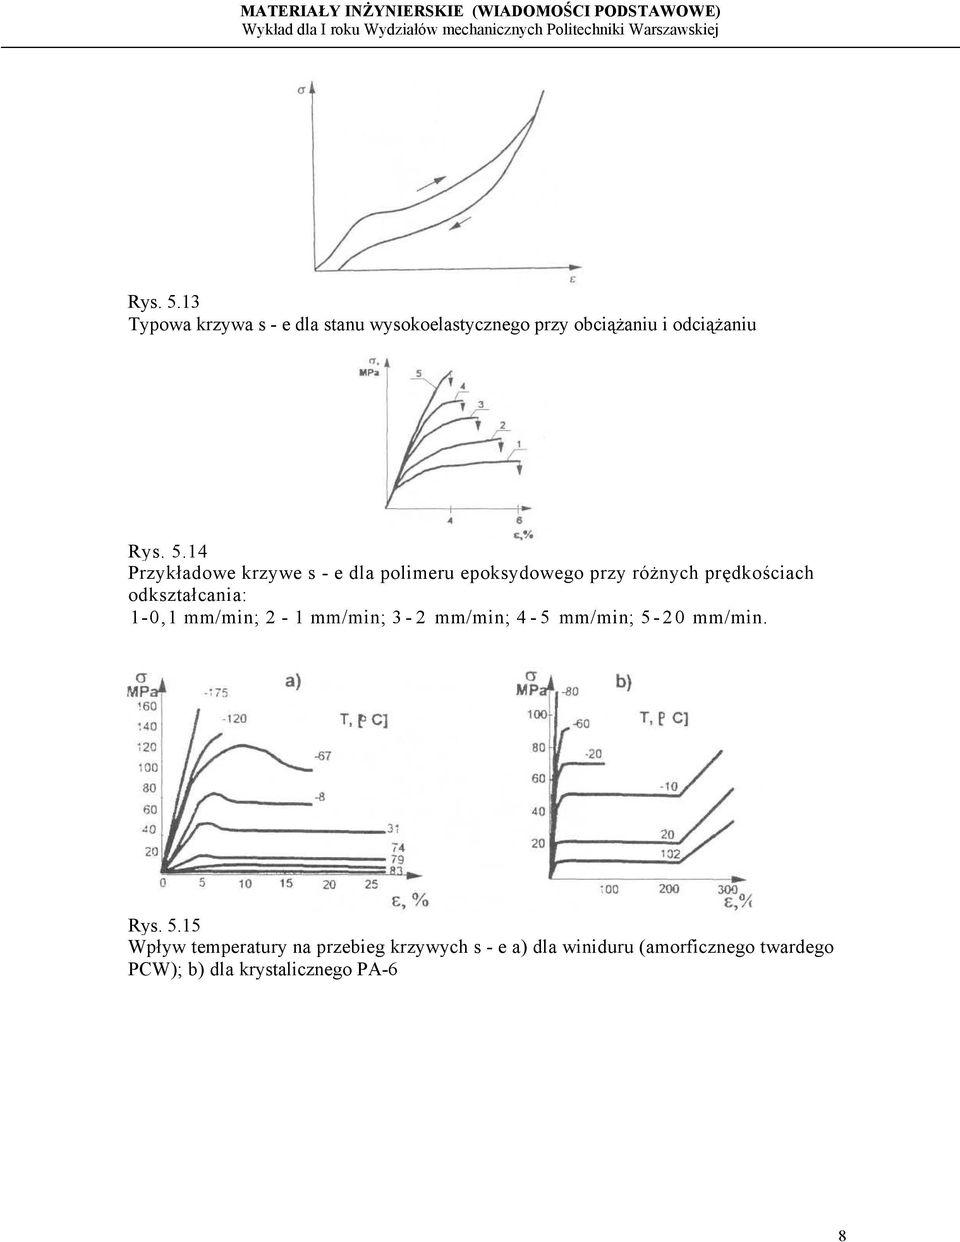 krzywe s - e dla polimeru epoksydowego przy różnych prędkościach odkształcania: 1-0,1 mm/min;